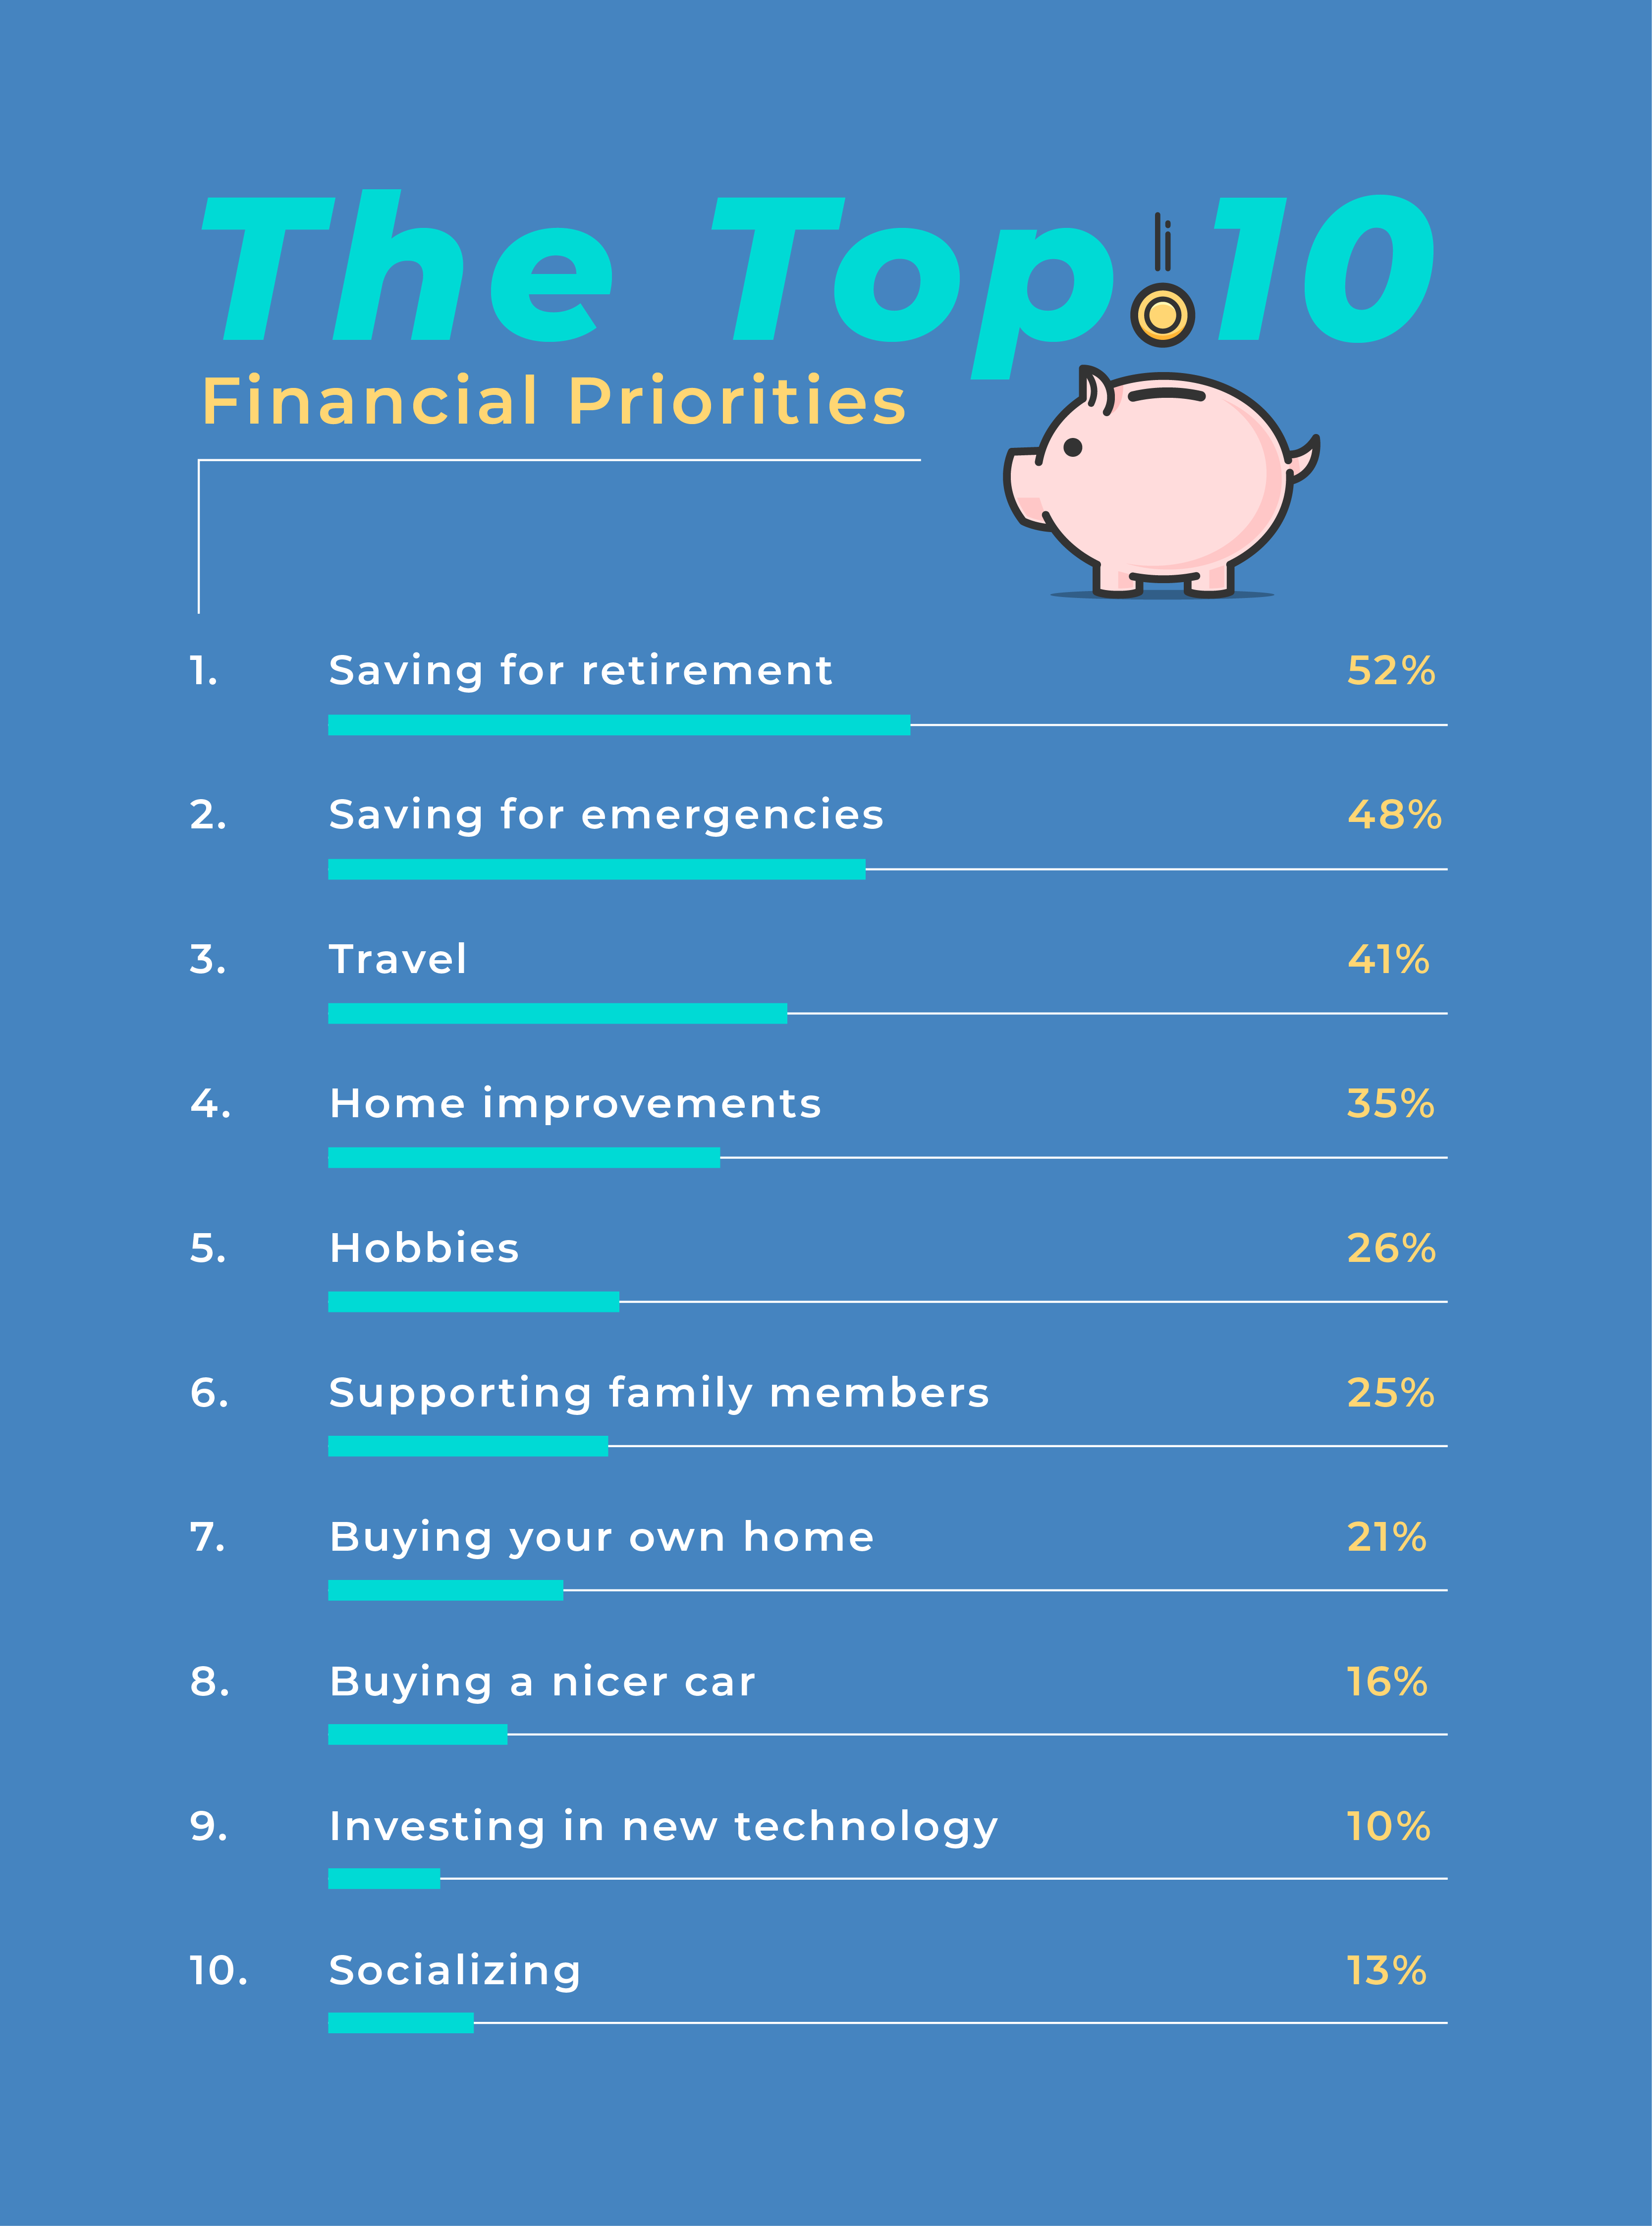 Top Financial Priorities